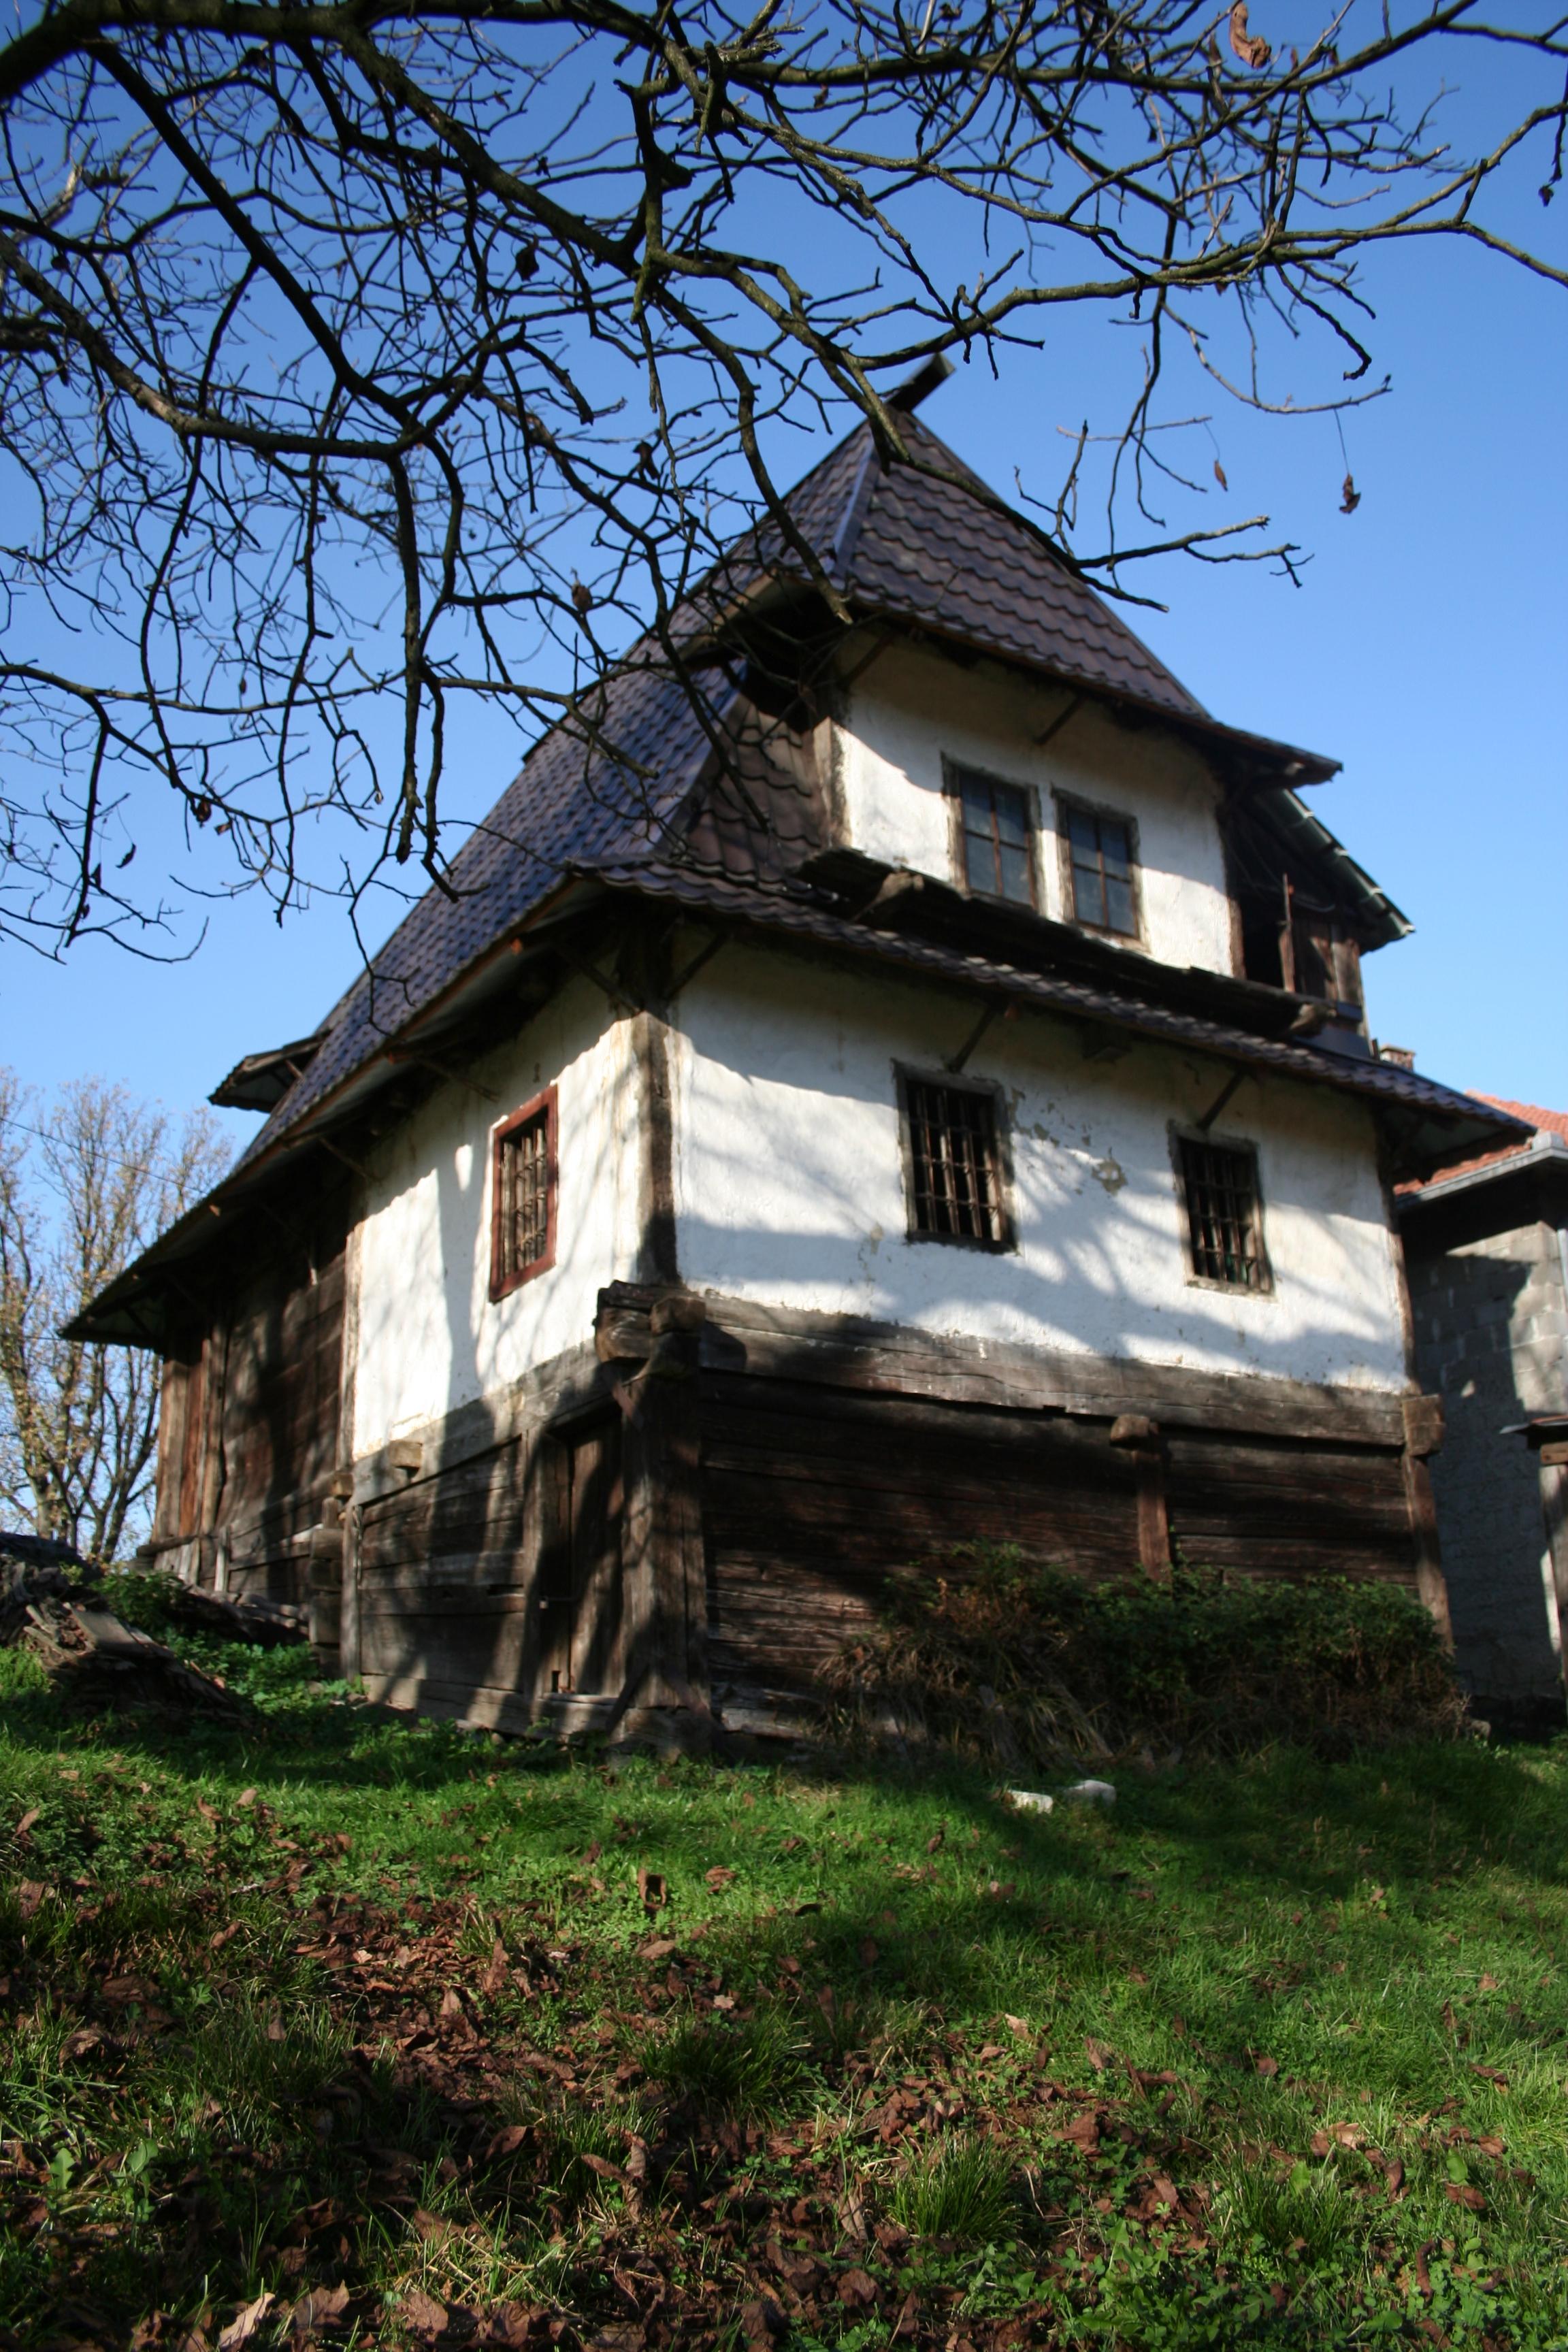 Nacionalni spomenik Čamdžića kuća jedna je od rijetkih sačuvanih brvnara